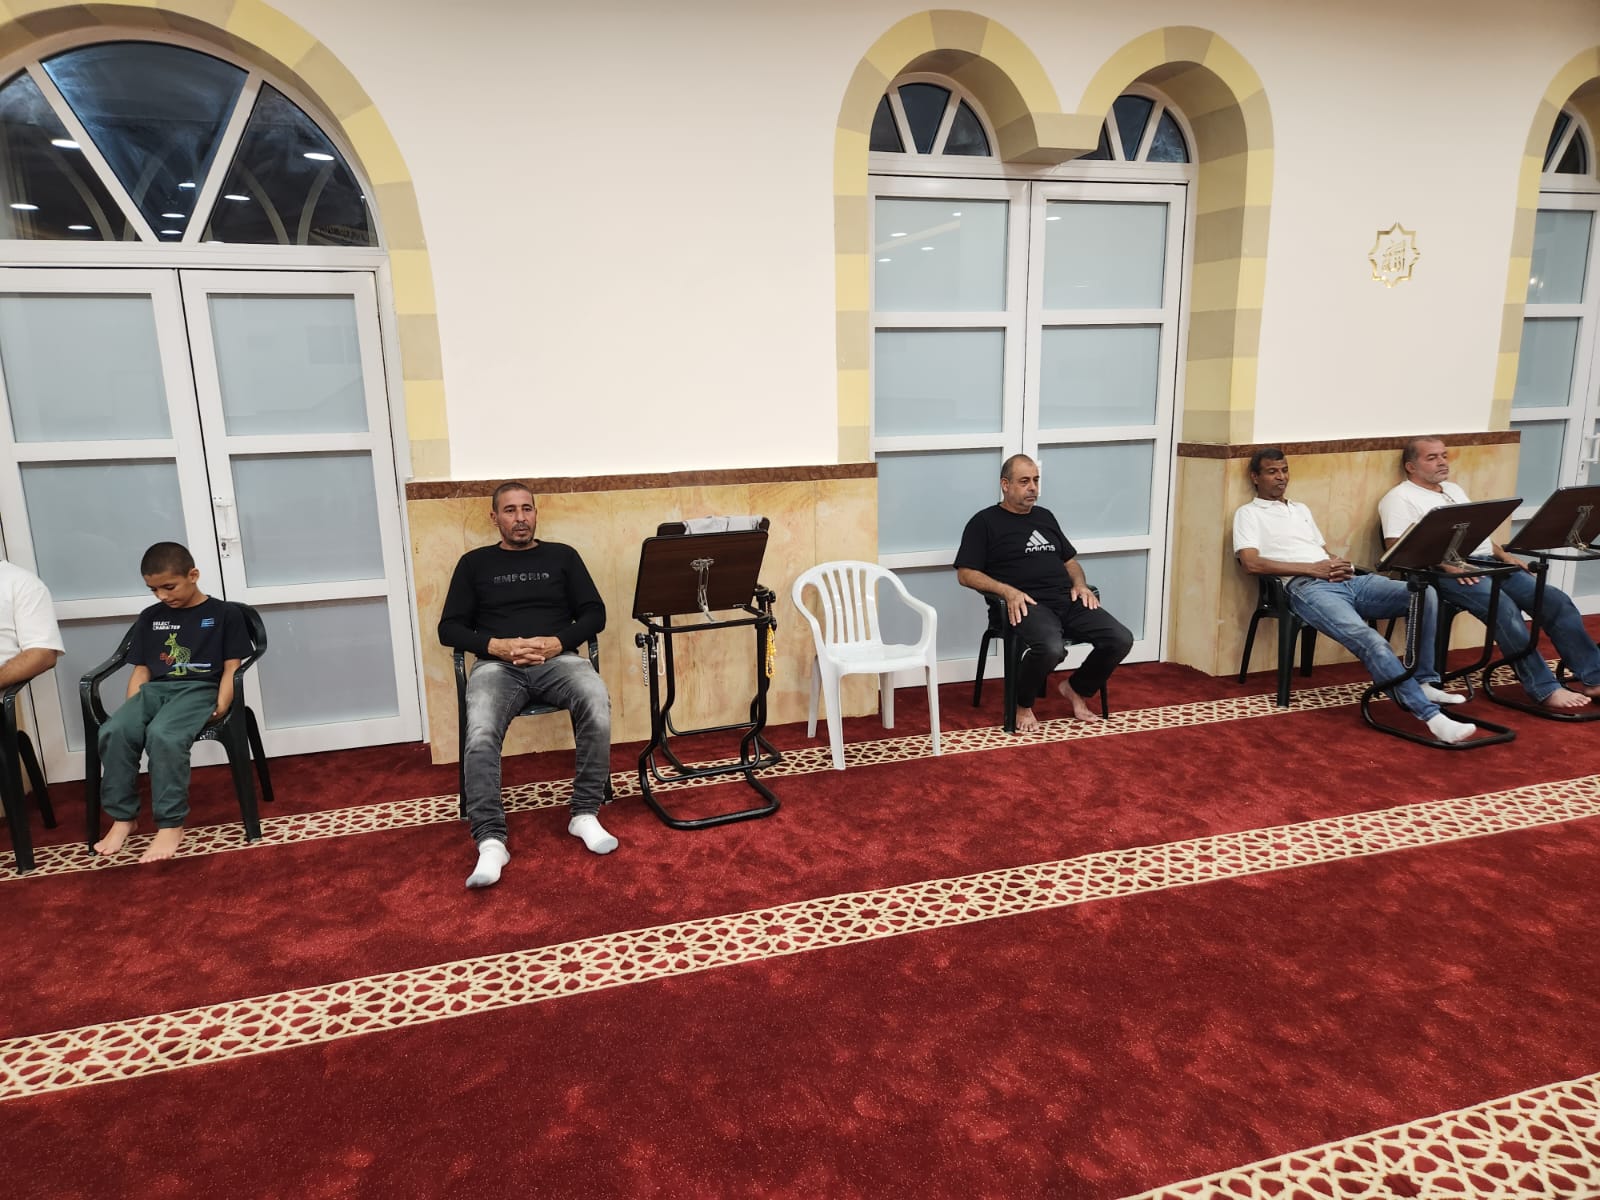 يافا: بالصور الأمسية الأسبوعية (مجالس النور ) في مسجد العجمي